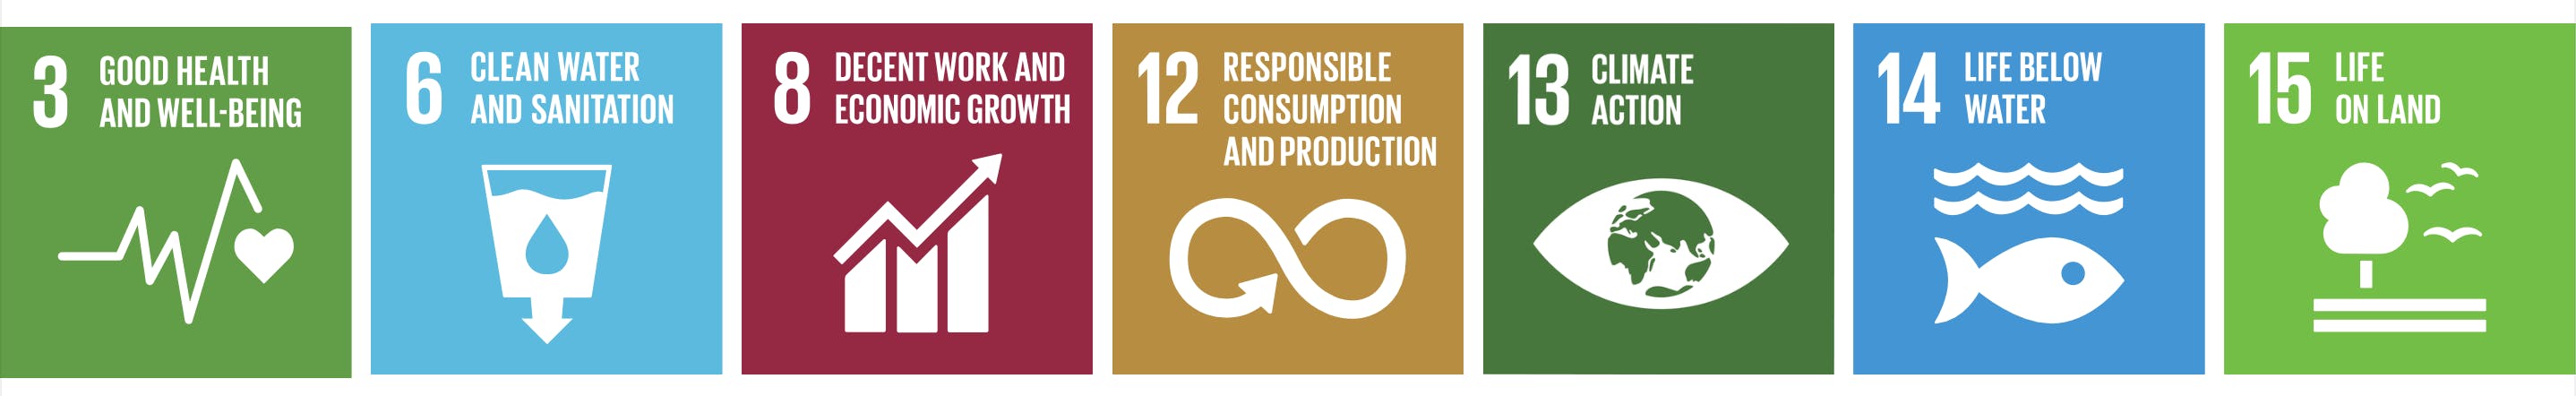 Bild der Ziele für nachhaltige Entwicklung (SDGs) 3, 6, 8, 12, 13, 14, 15.